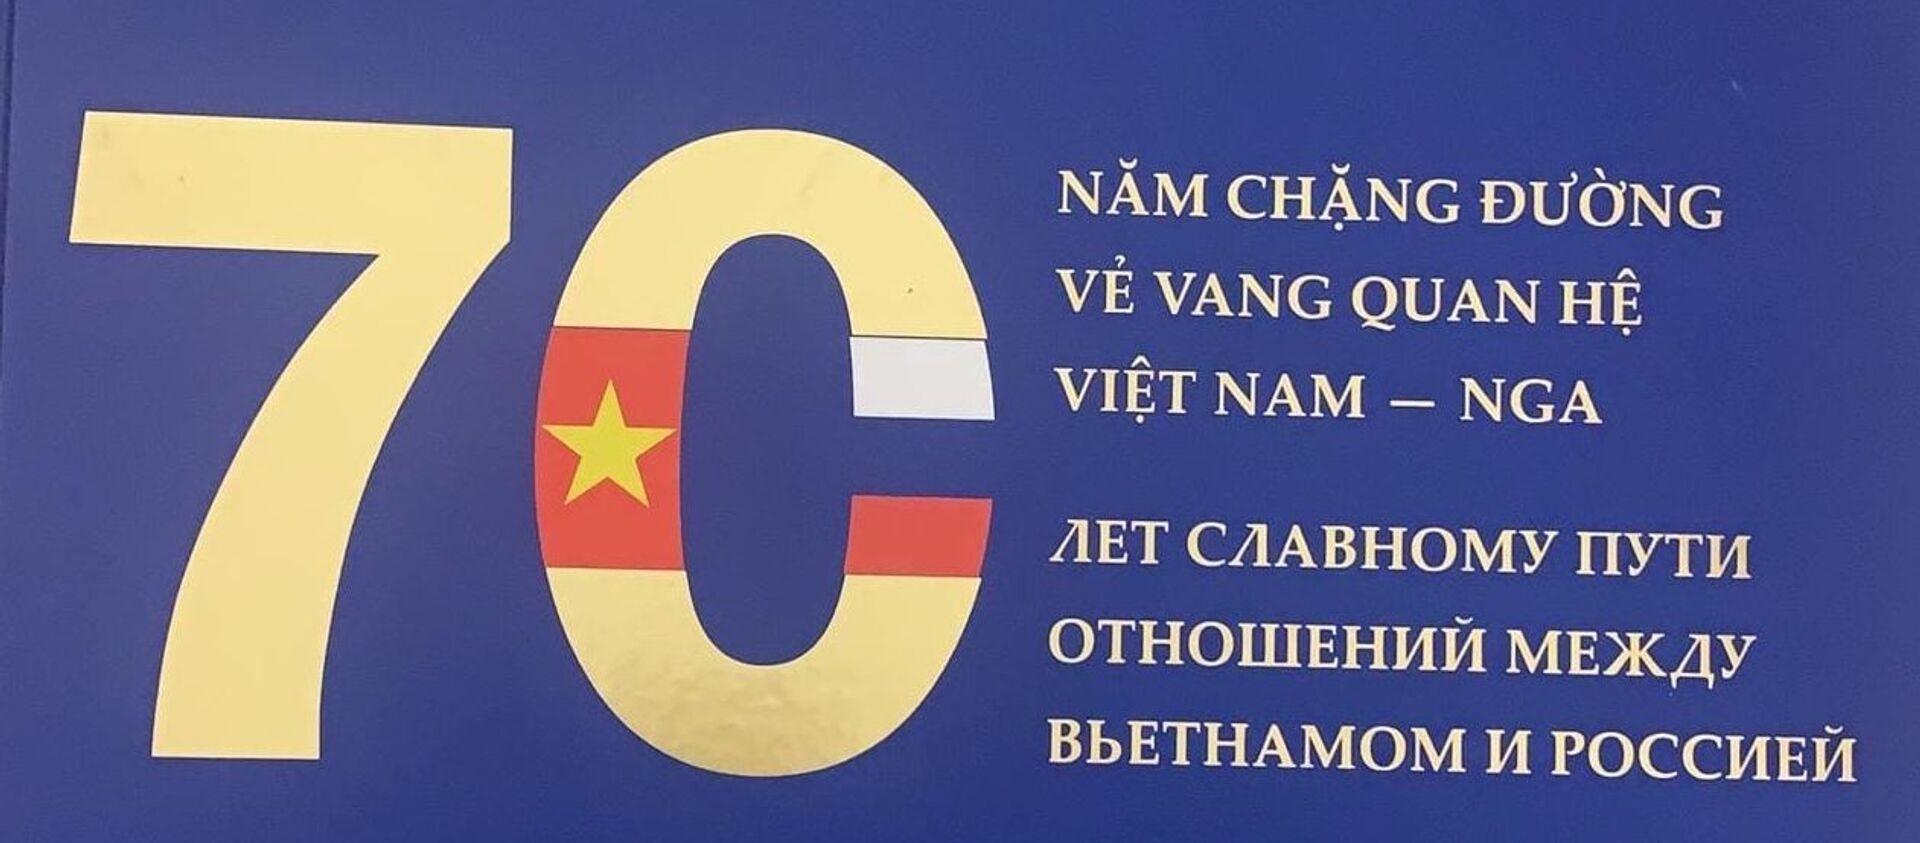 Pho bách khoa thư độc đáo về quan hệ của Việt Nam và Nga - Sputnik Việt Nam, 1920, 06.03.2021